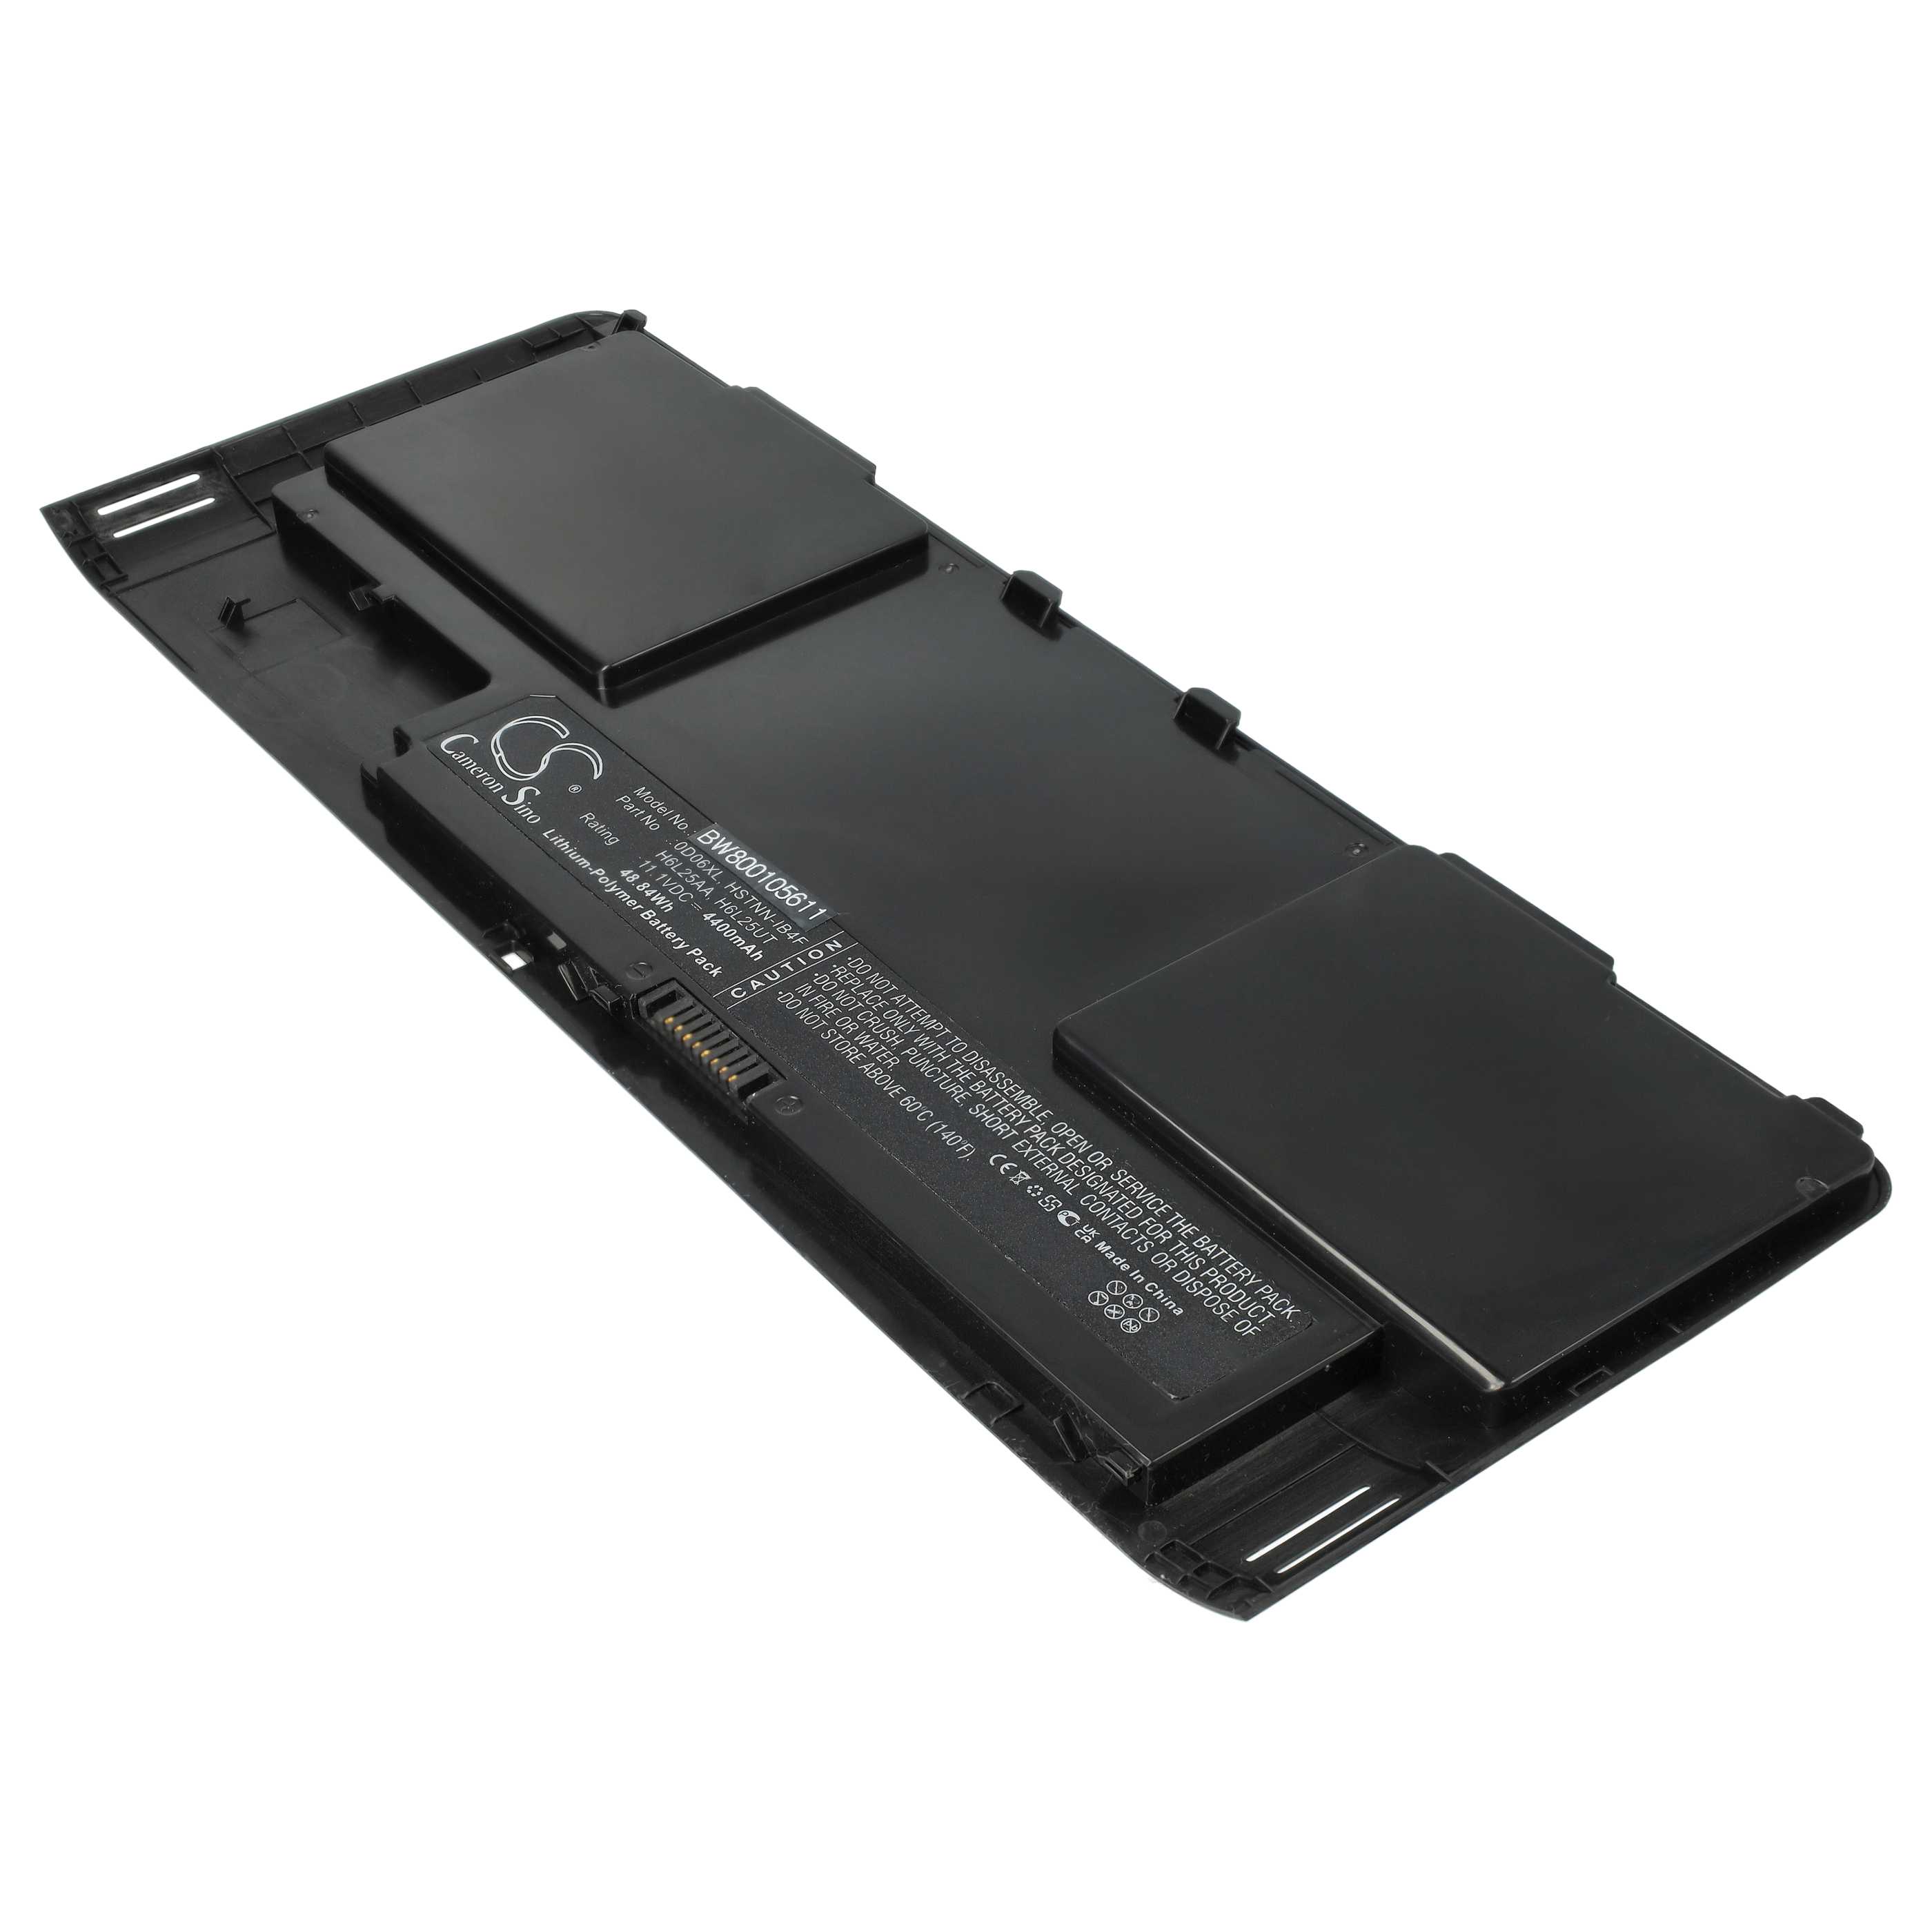 Batterie remplace HP 0DO6XL, 698750-171, 0D06XL pour ordinateur portable - 4400mAh 11,1V Li-polymère, noir